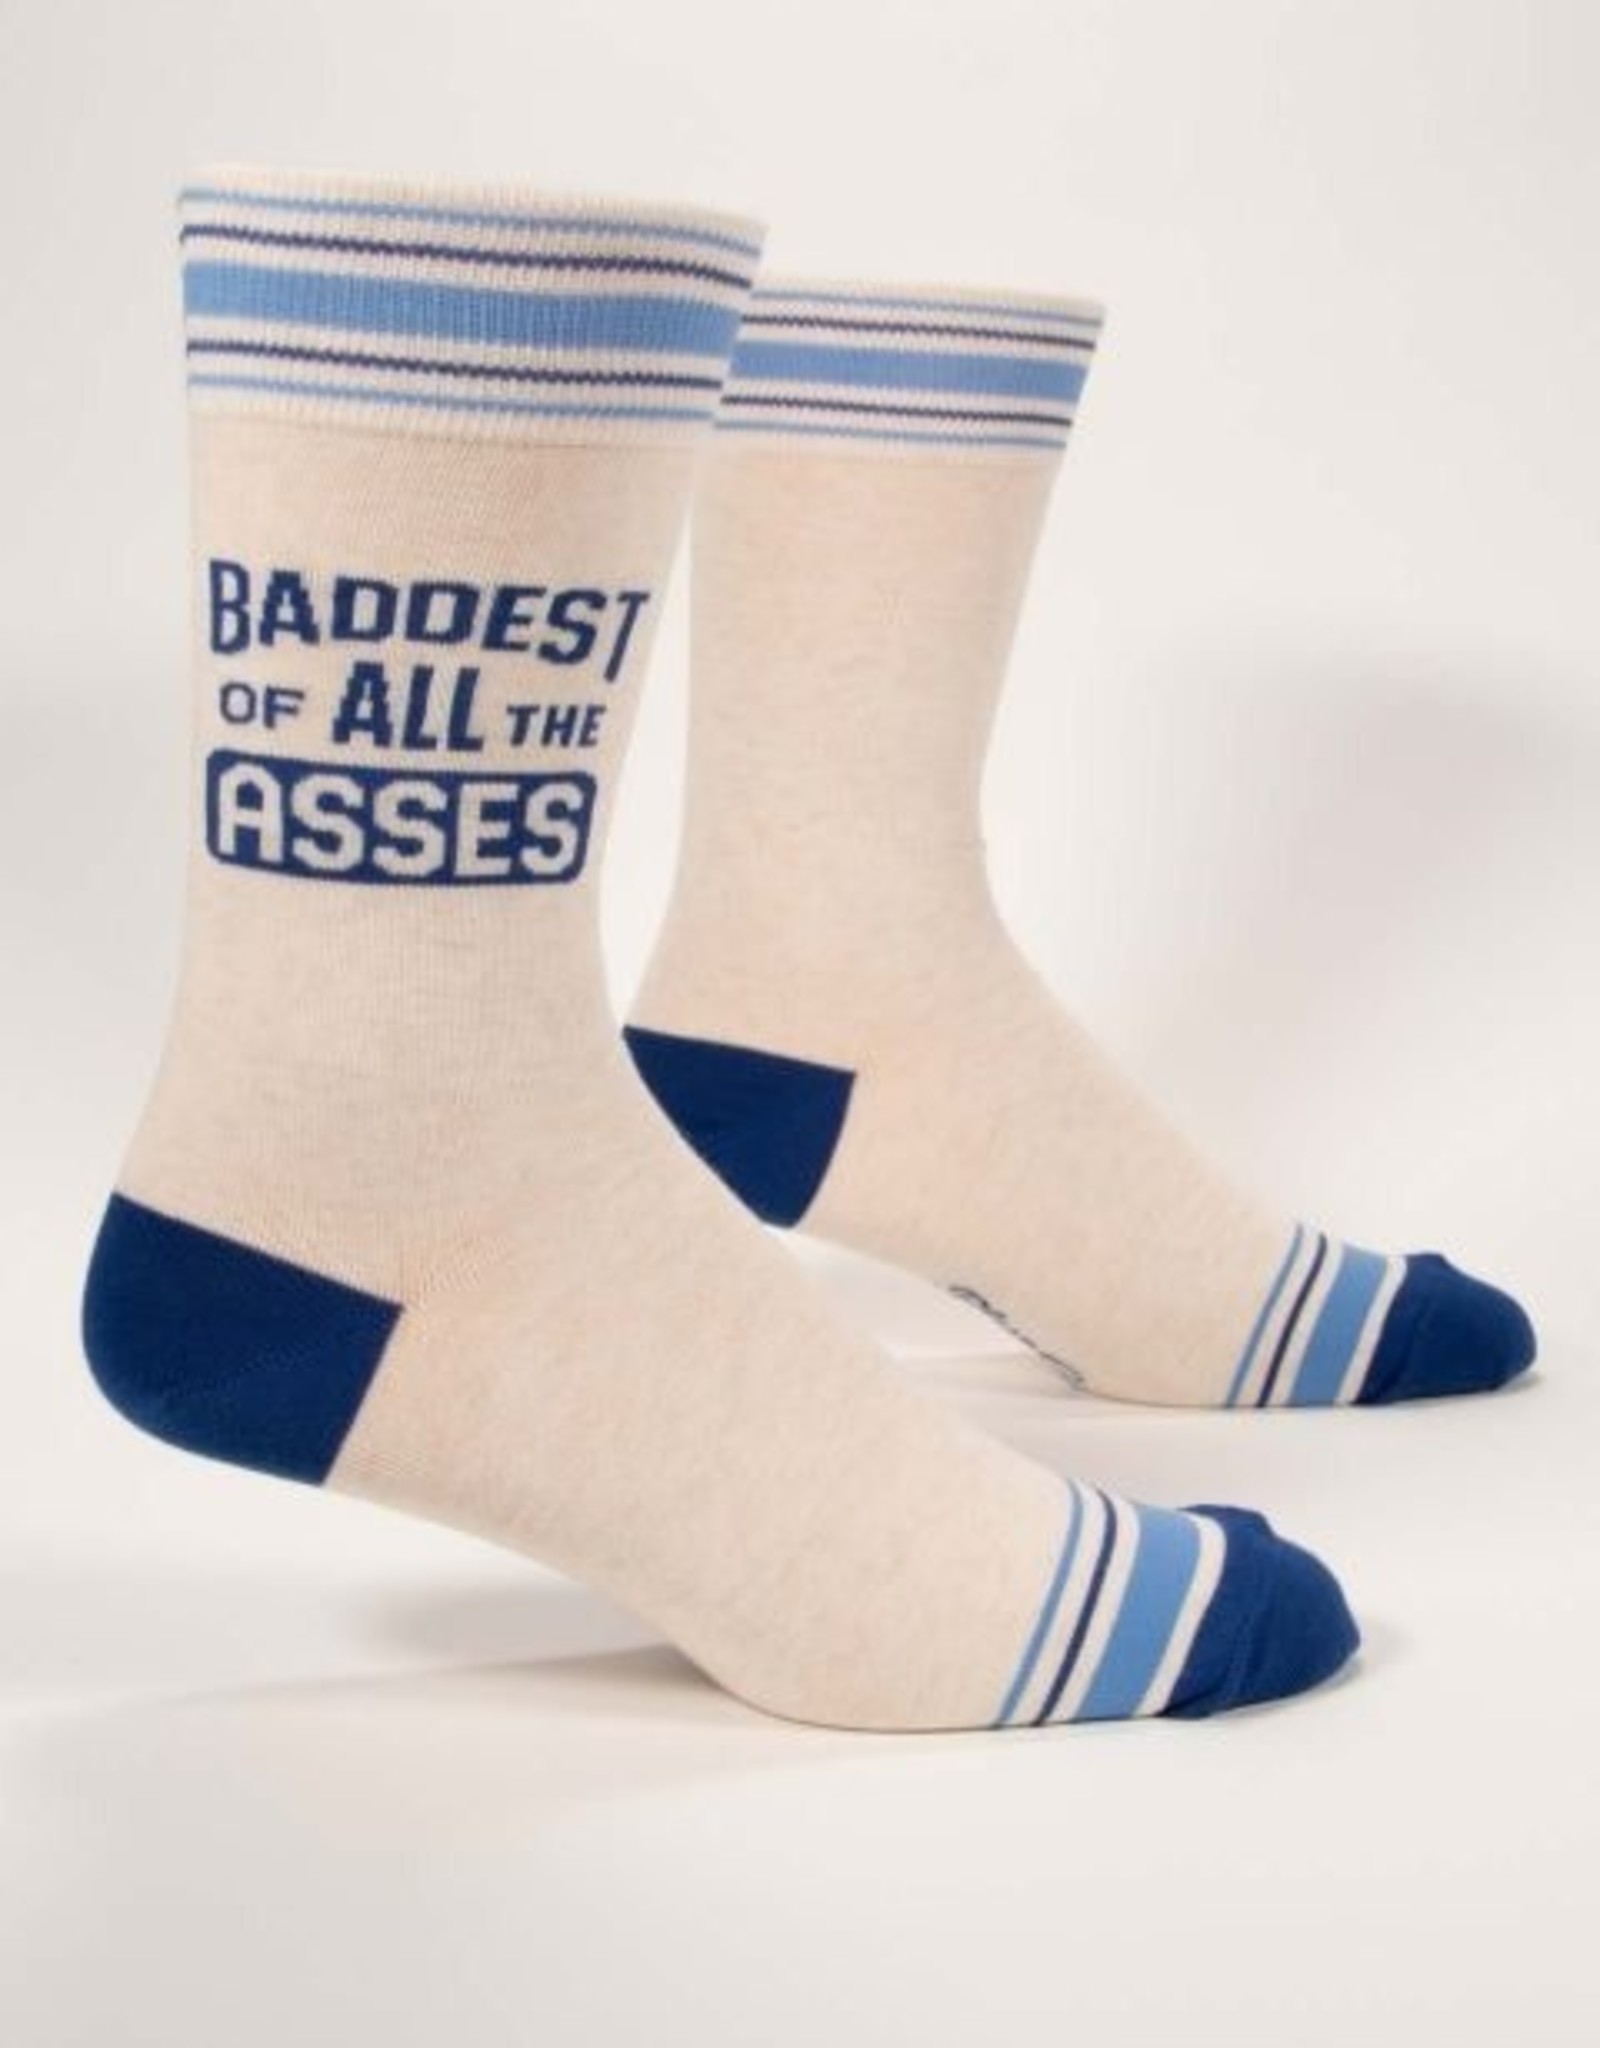 Baddest of Asses Men's Socks